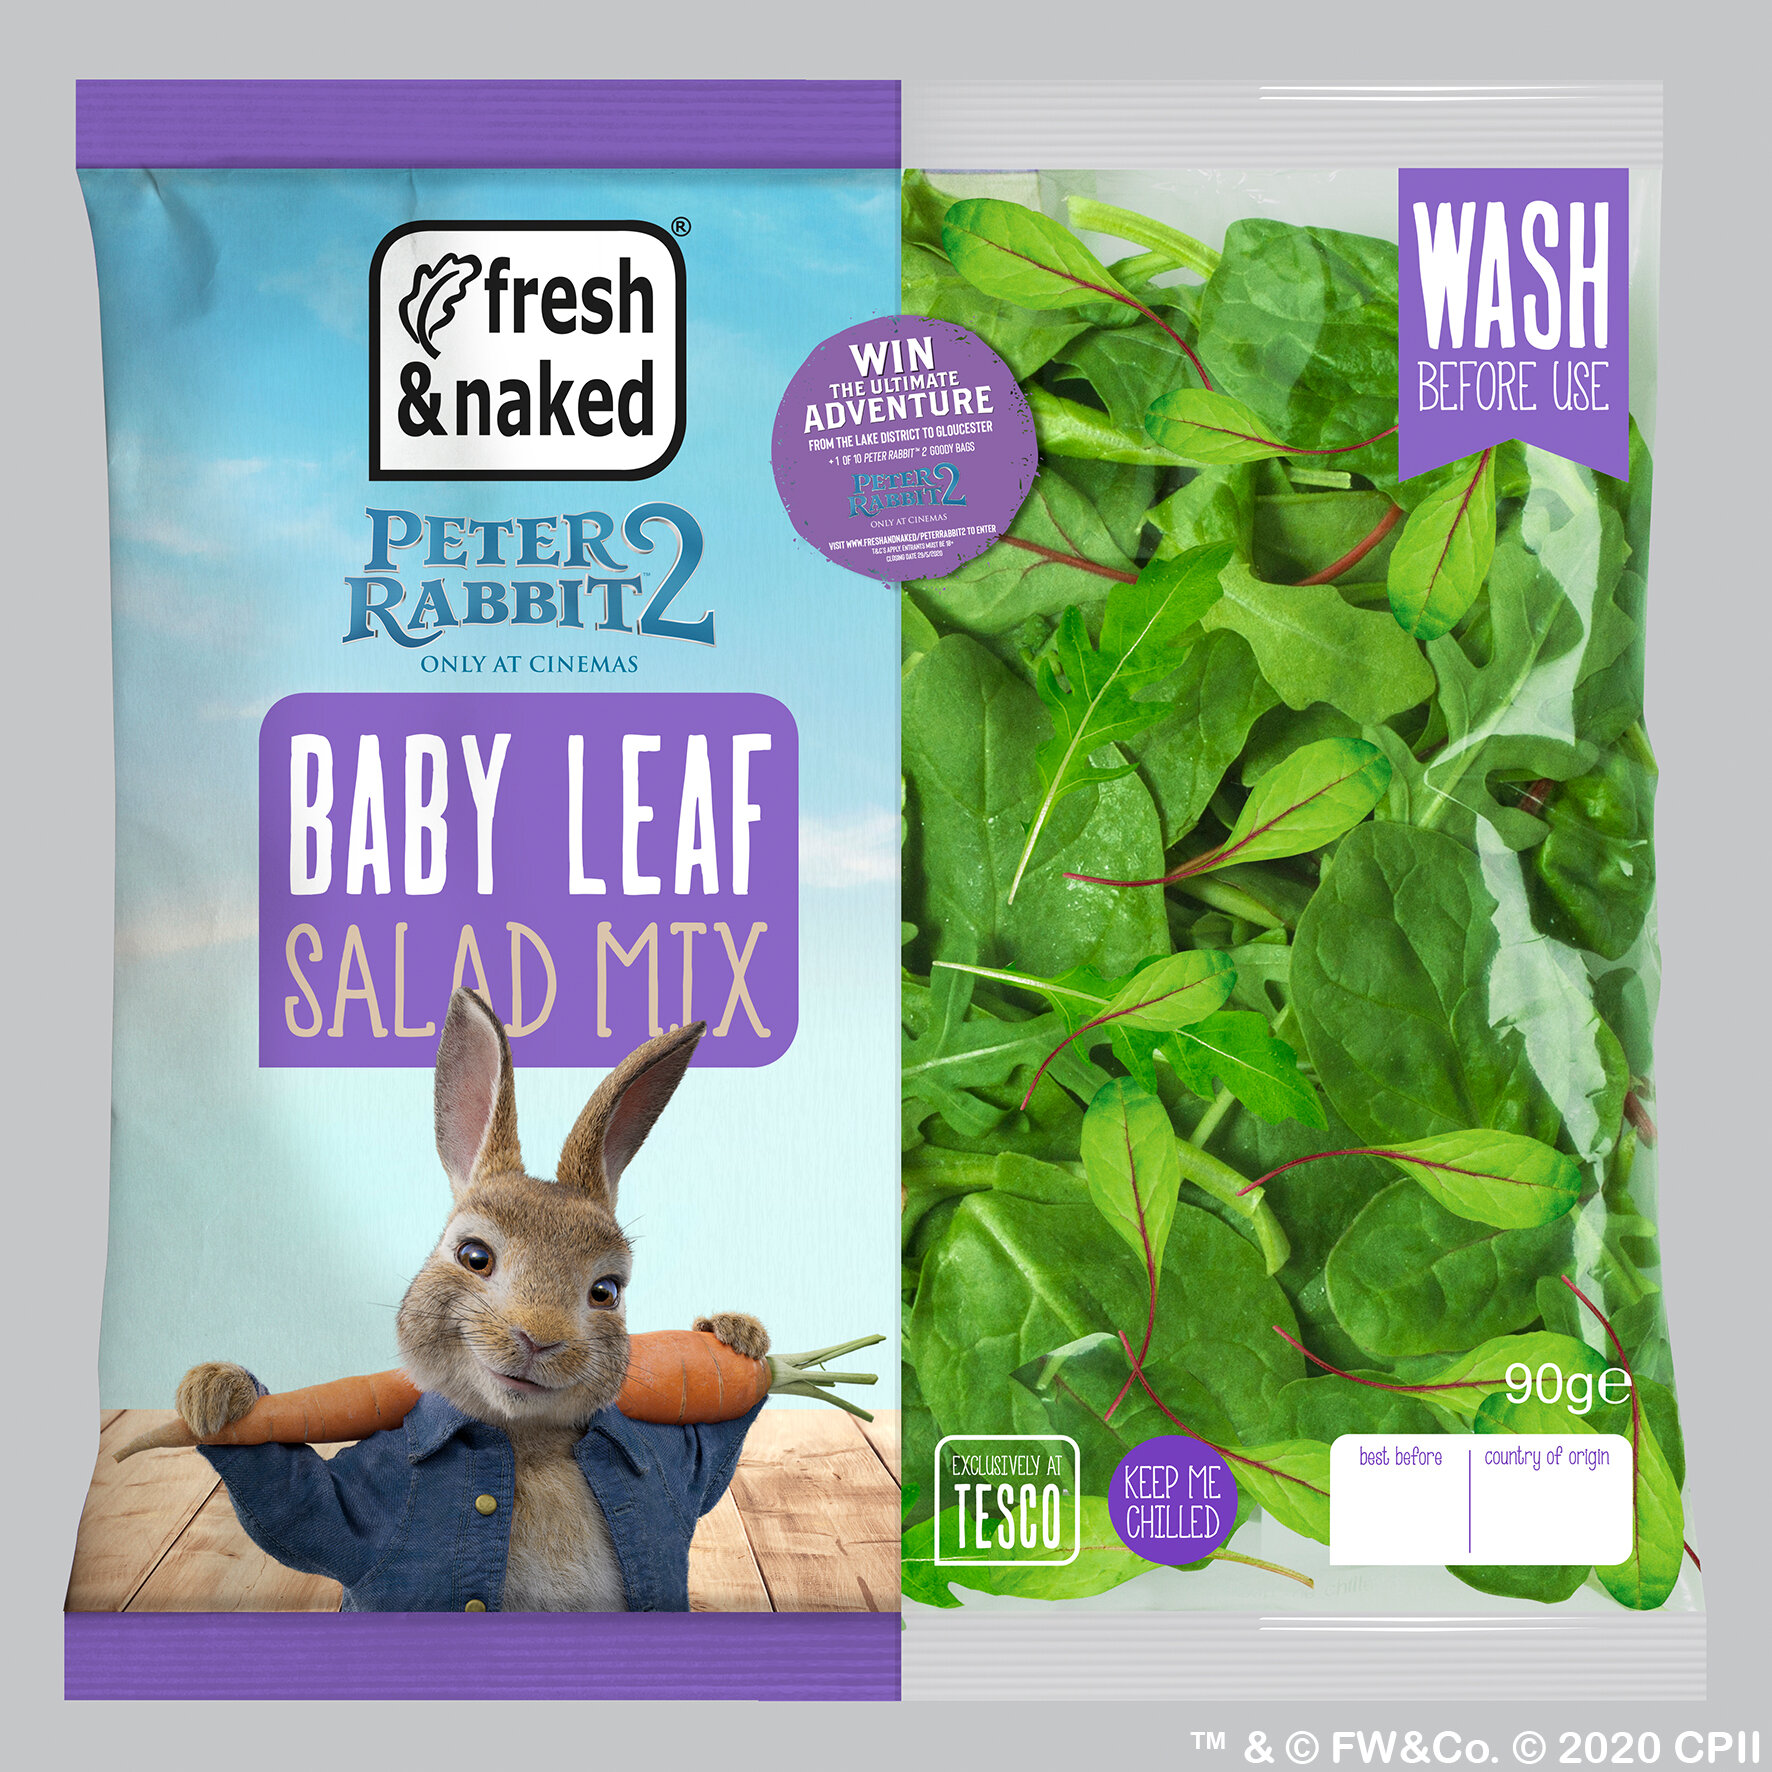 Baby leaf salad mix bag.jpg